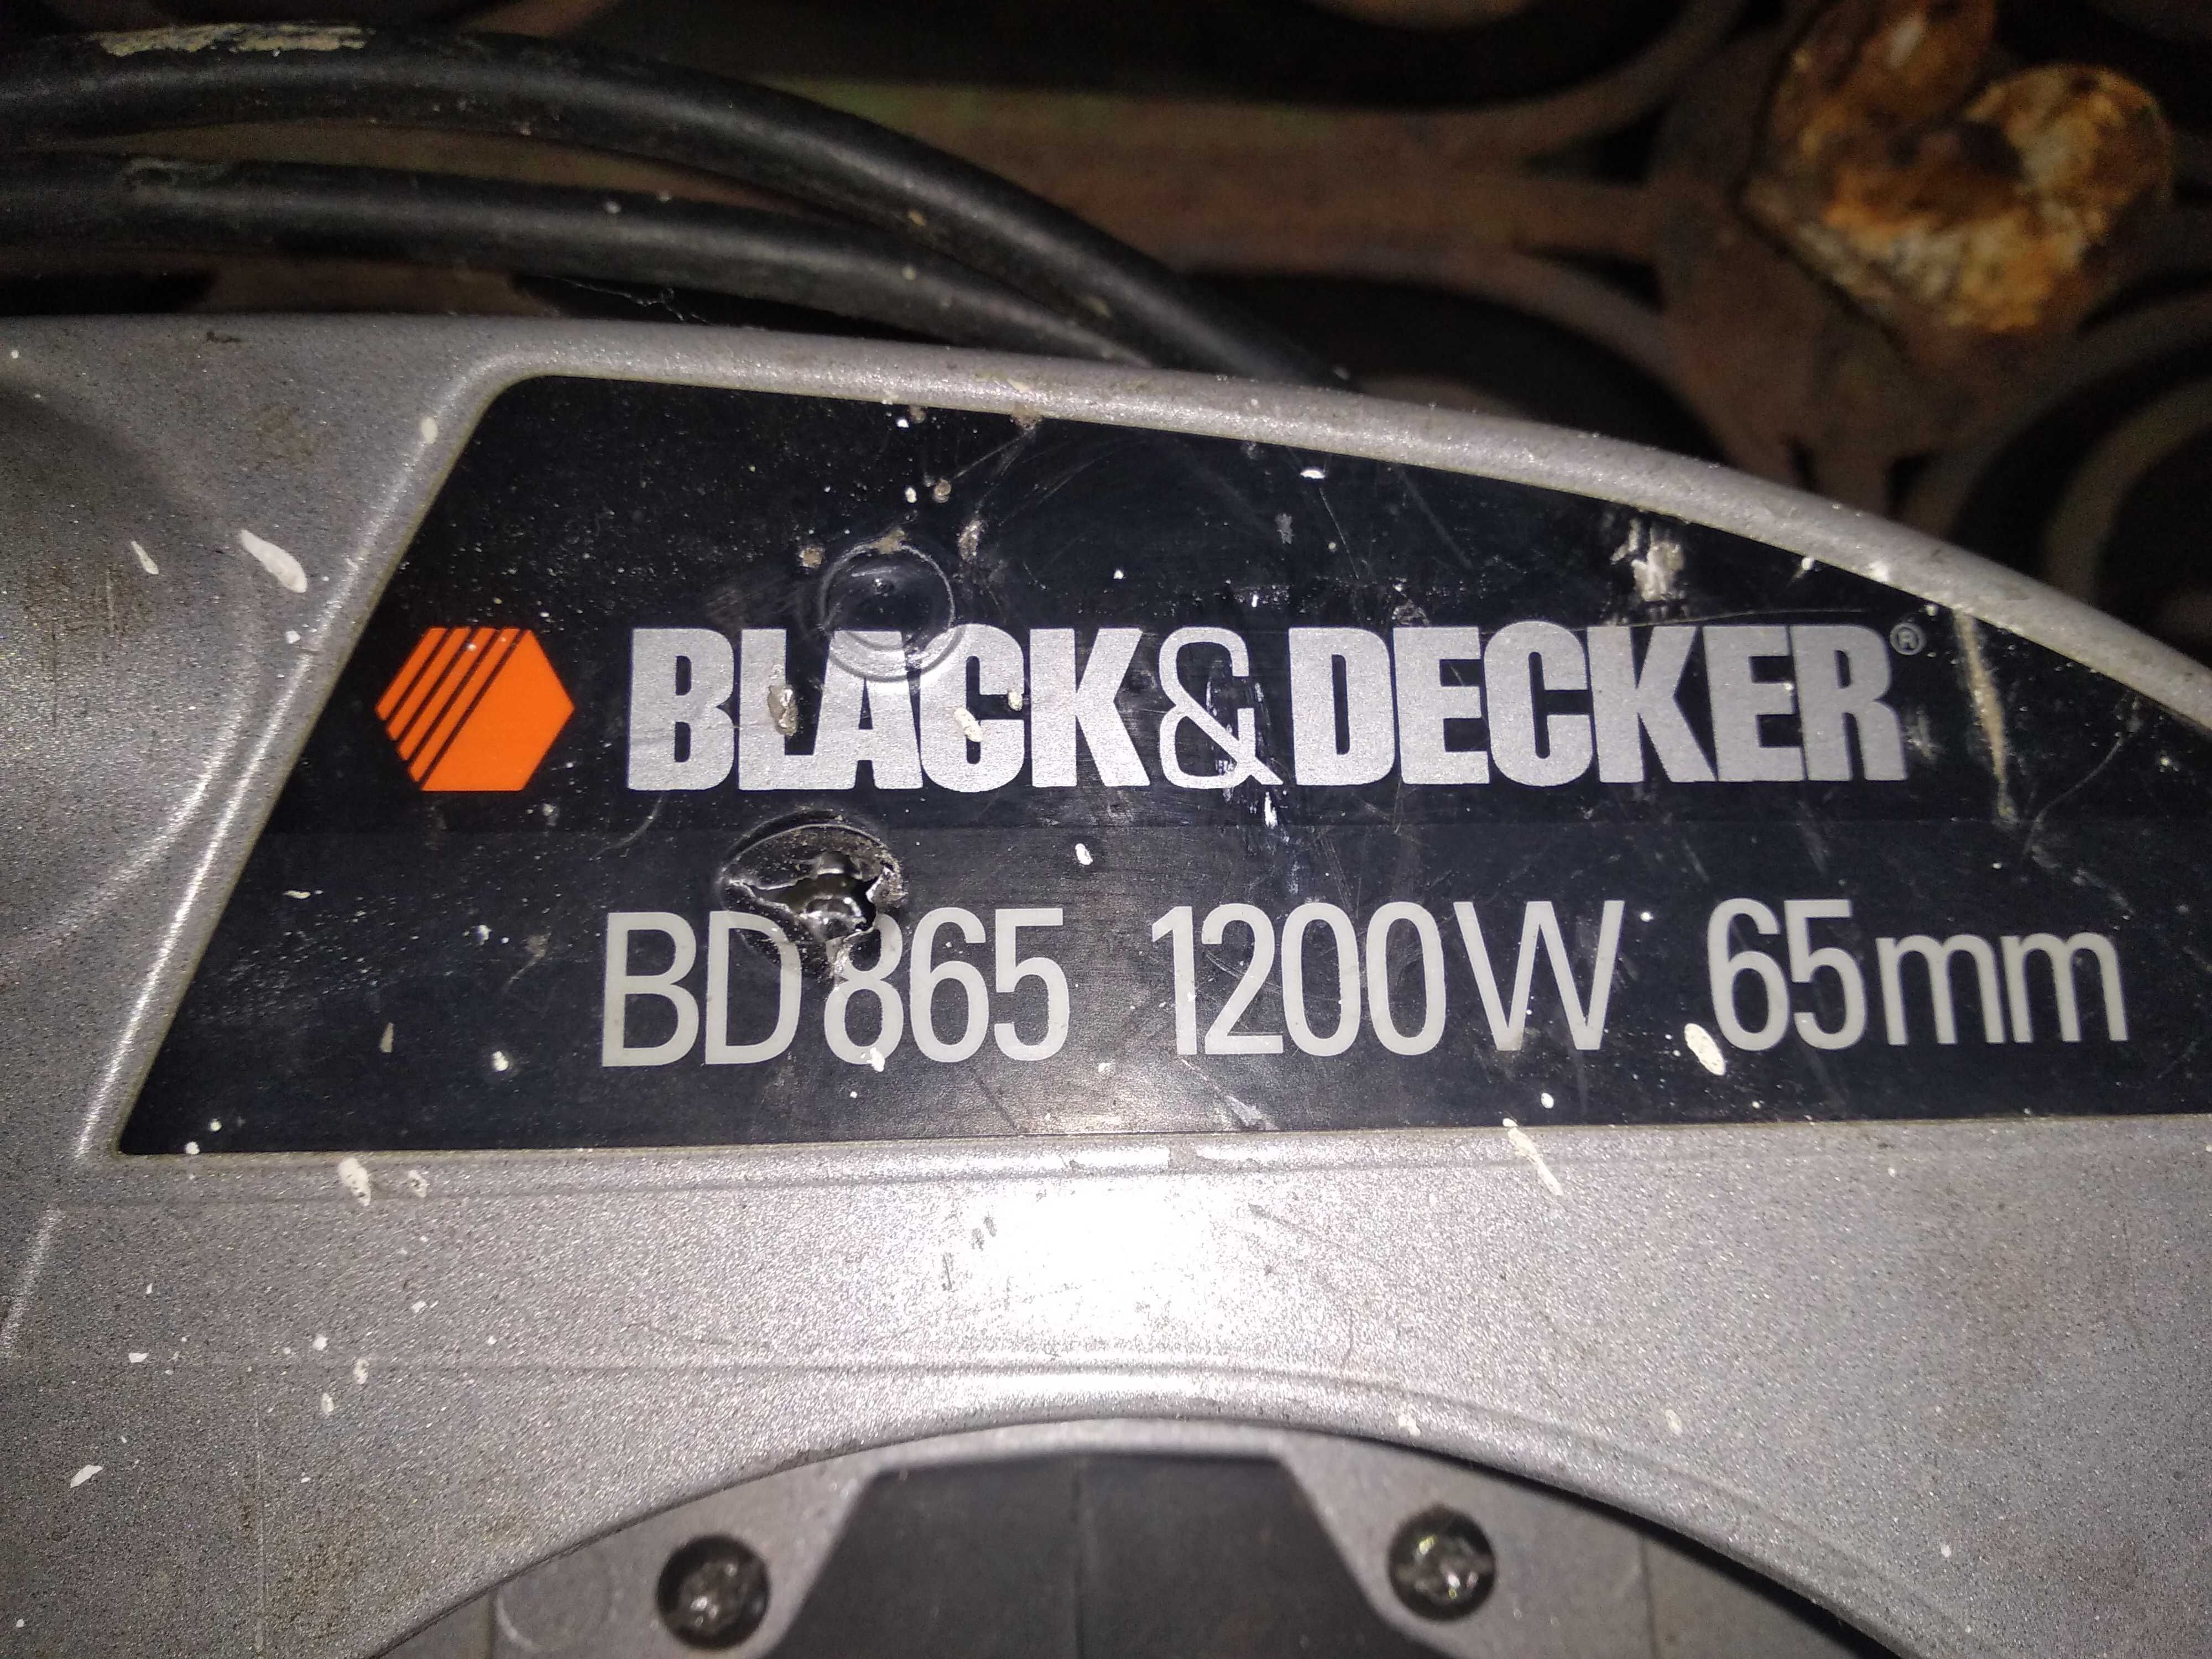 Паркєтка(дискова пила) орігінал BLACK DECKER виробництва АНГЛІЯ